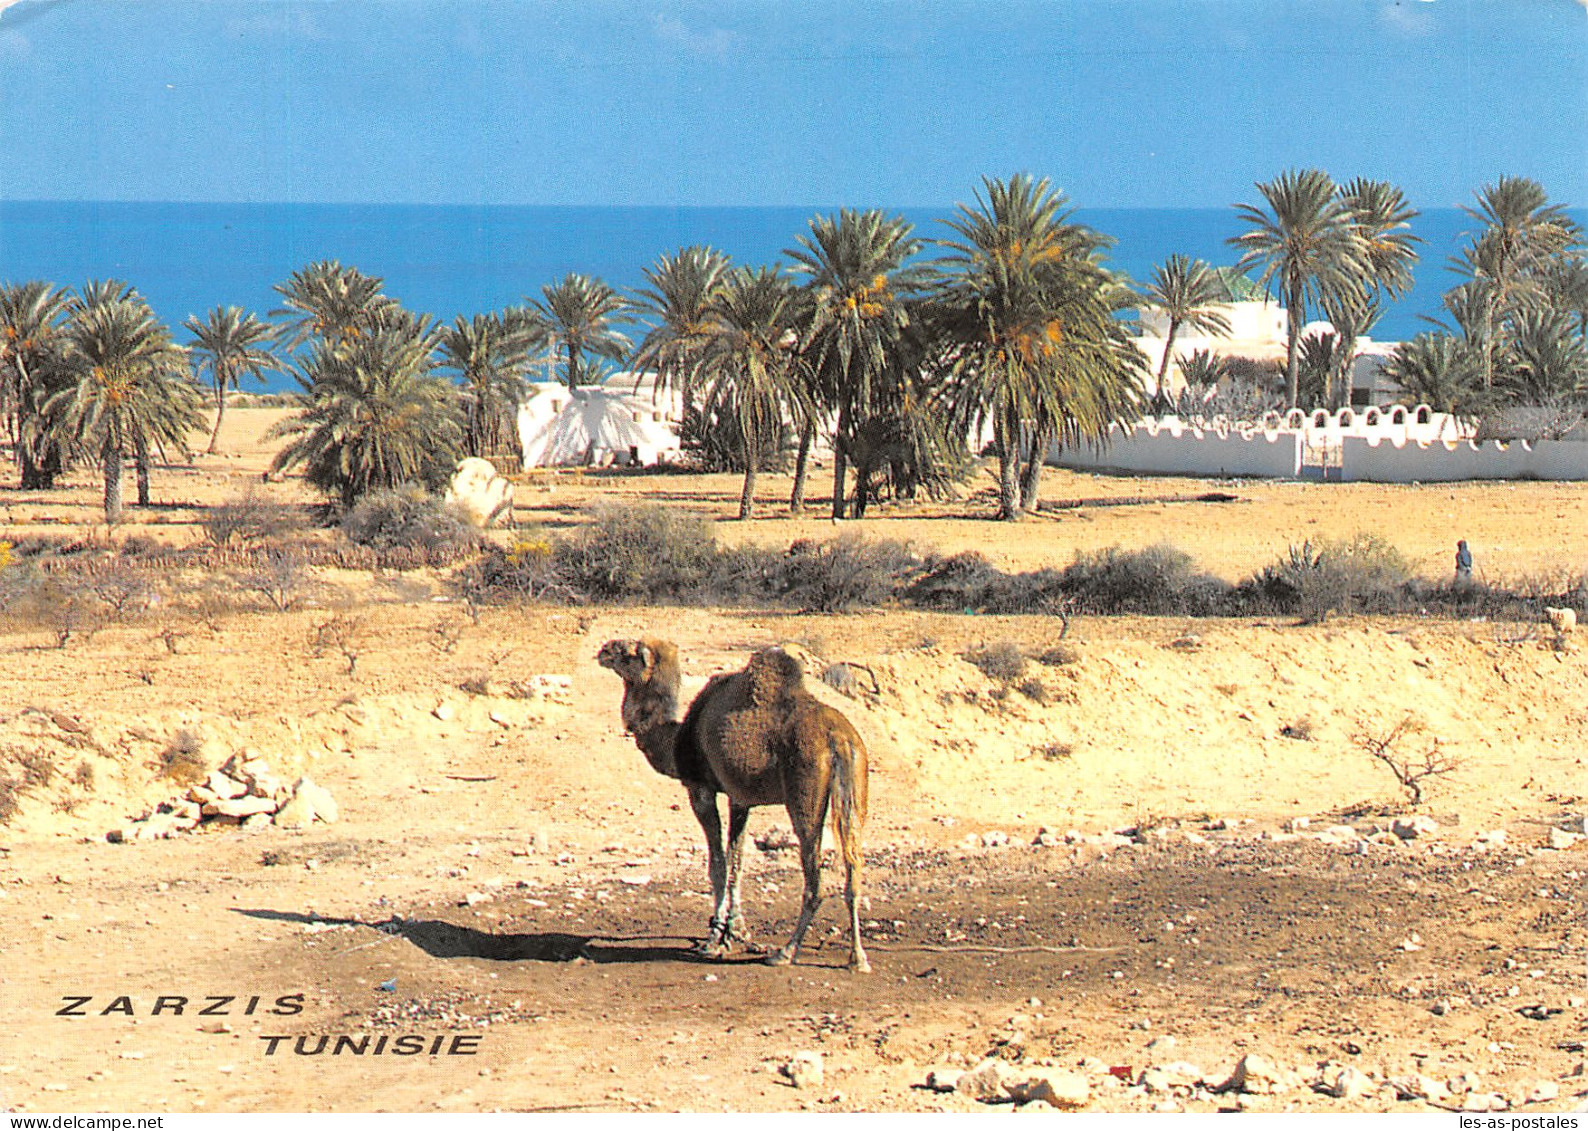 TUNISIE ZARSIS - Tunisie